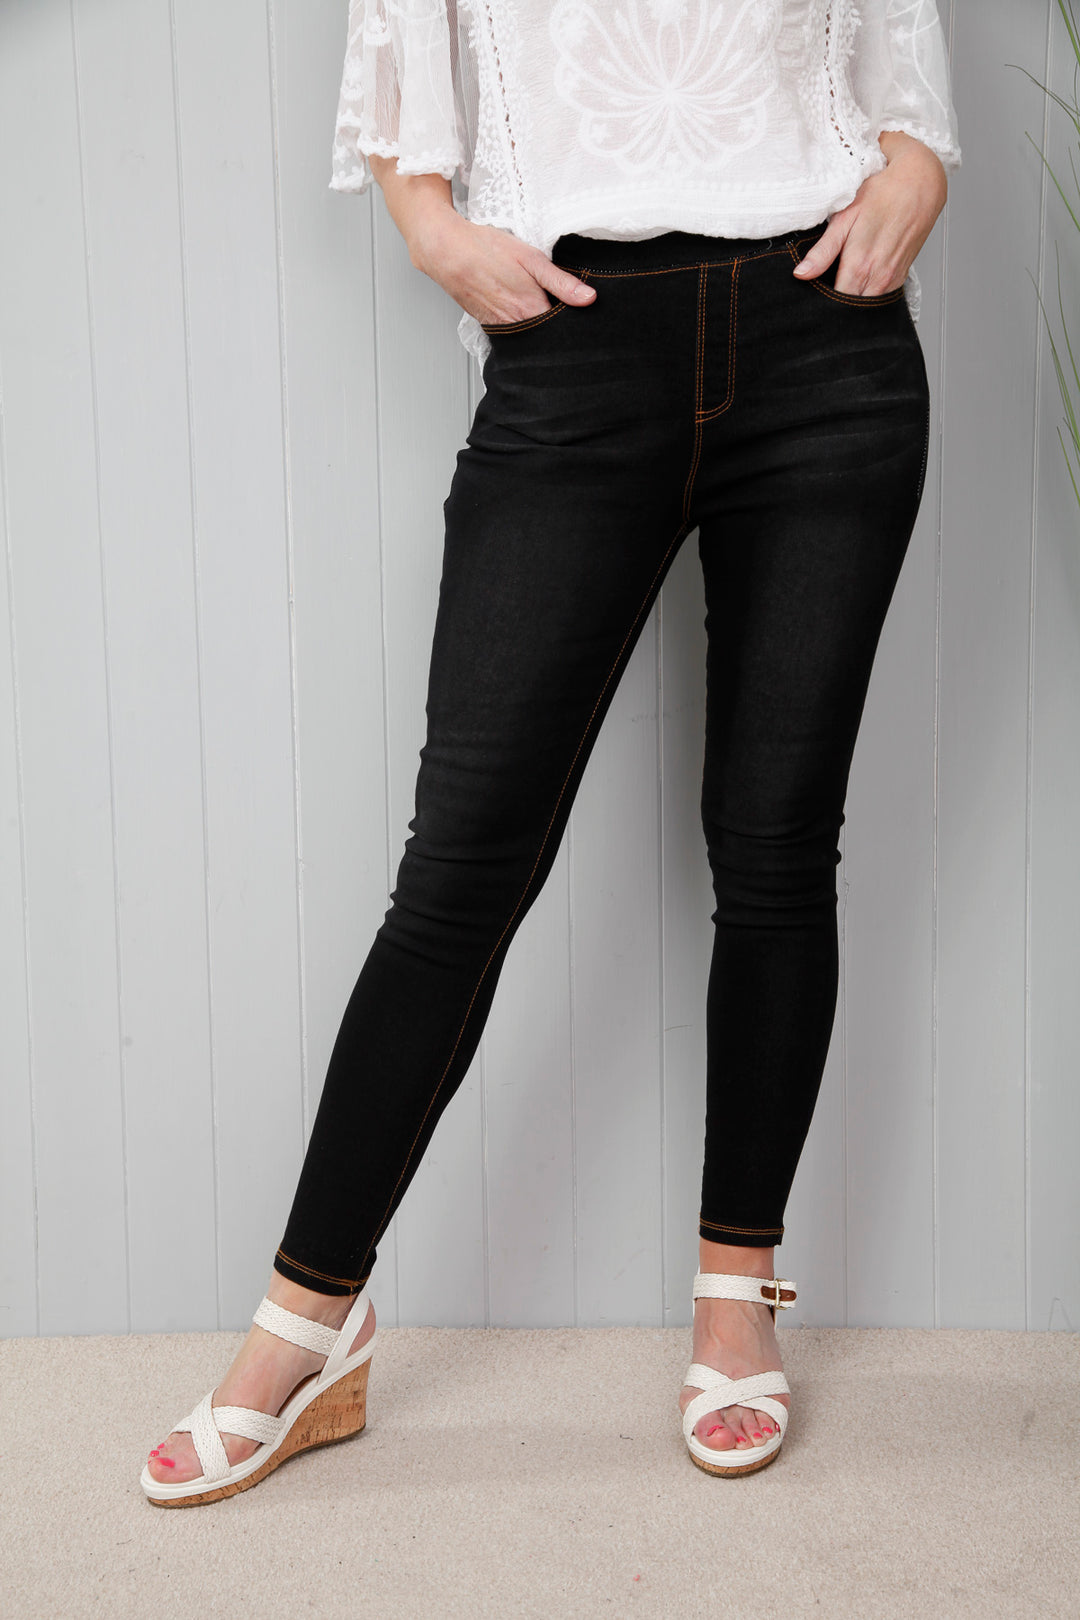 Buy Black Skinny Jeggings - 22, Jeans